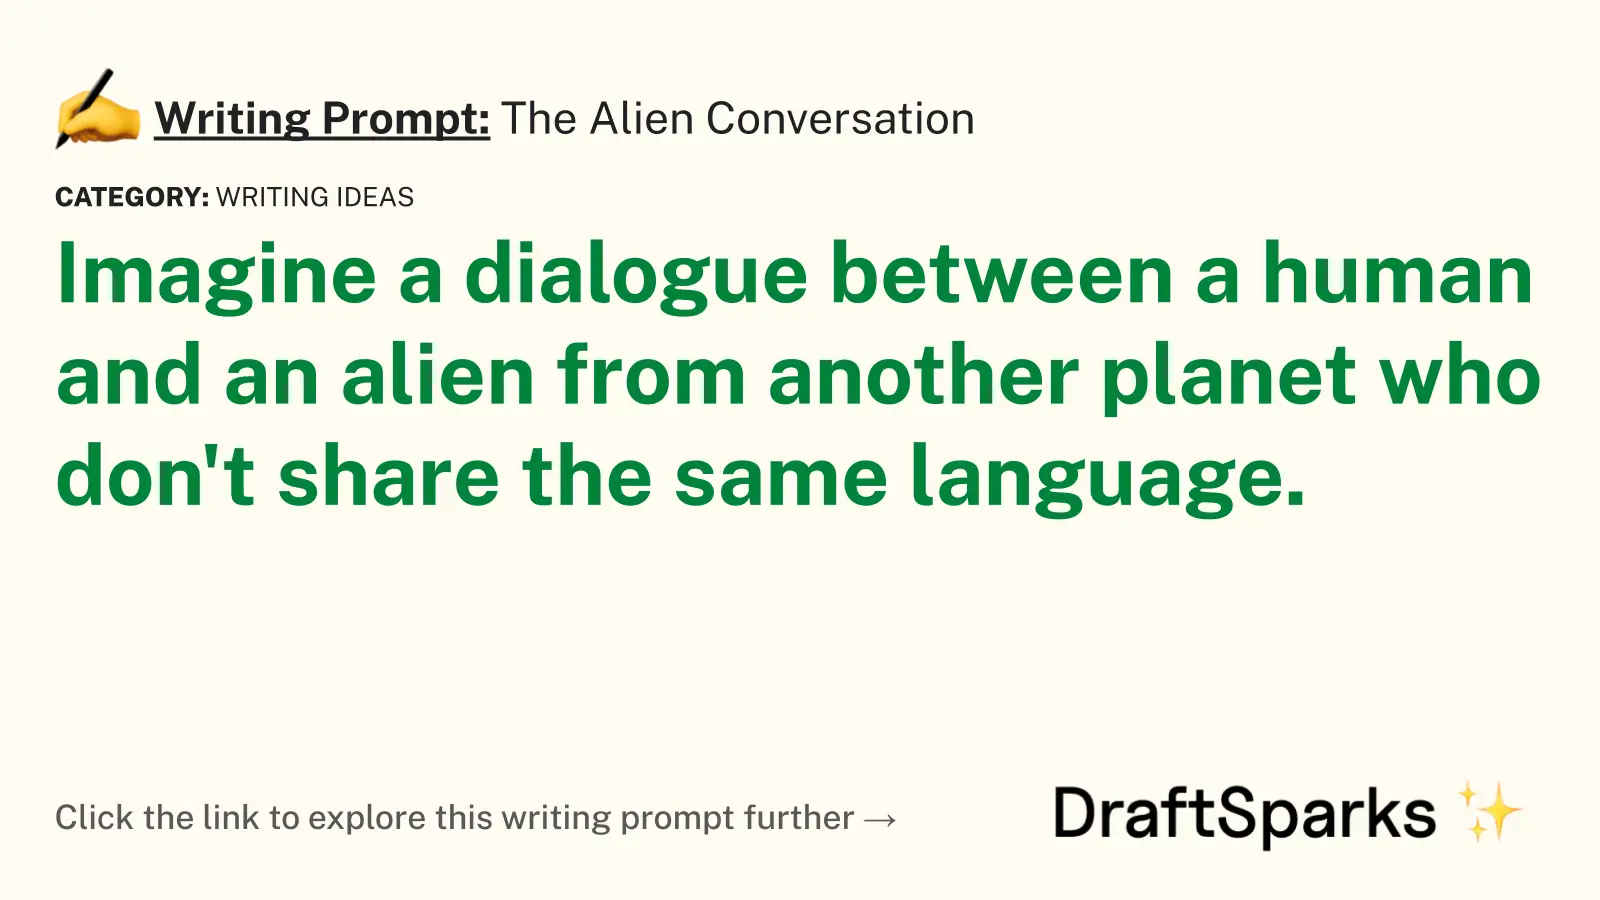 The Alien Conversation